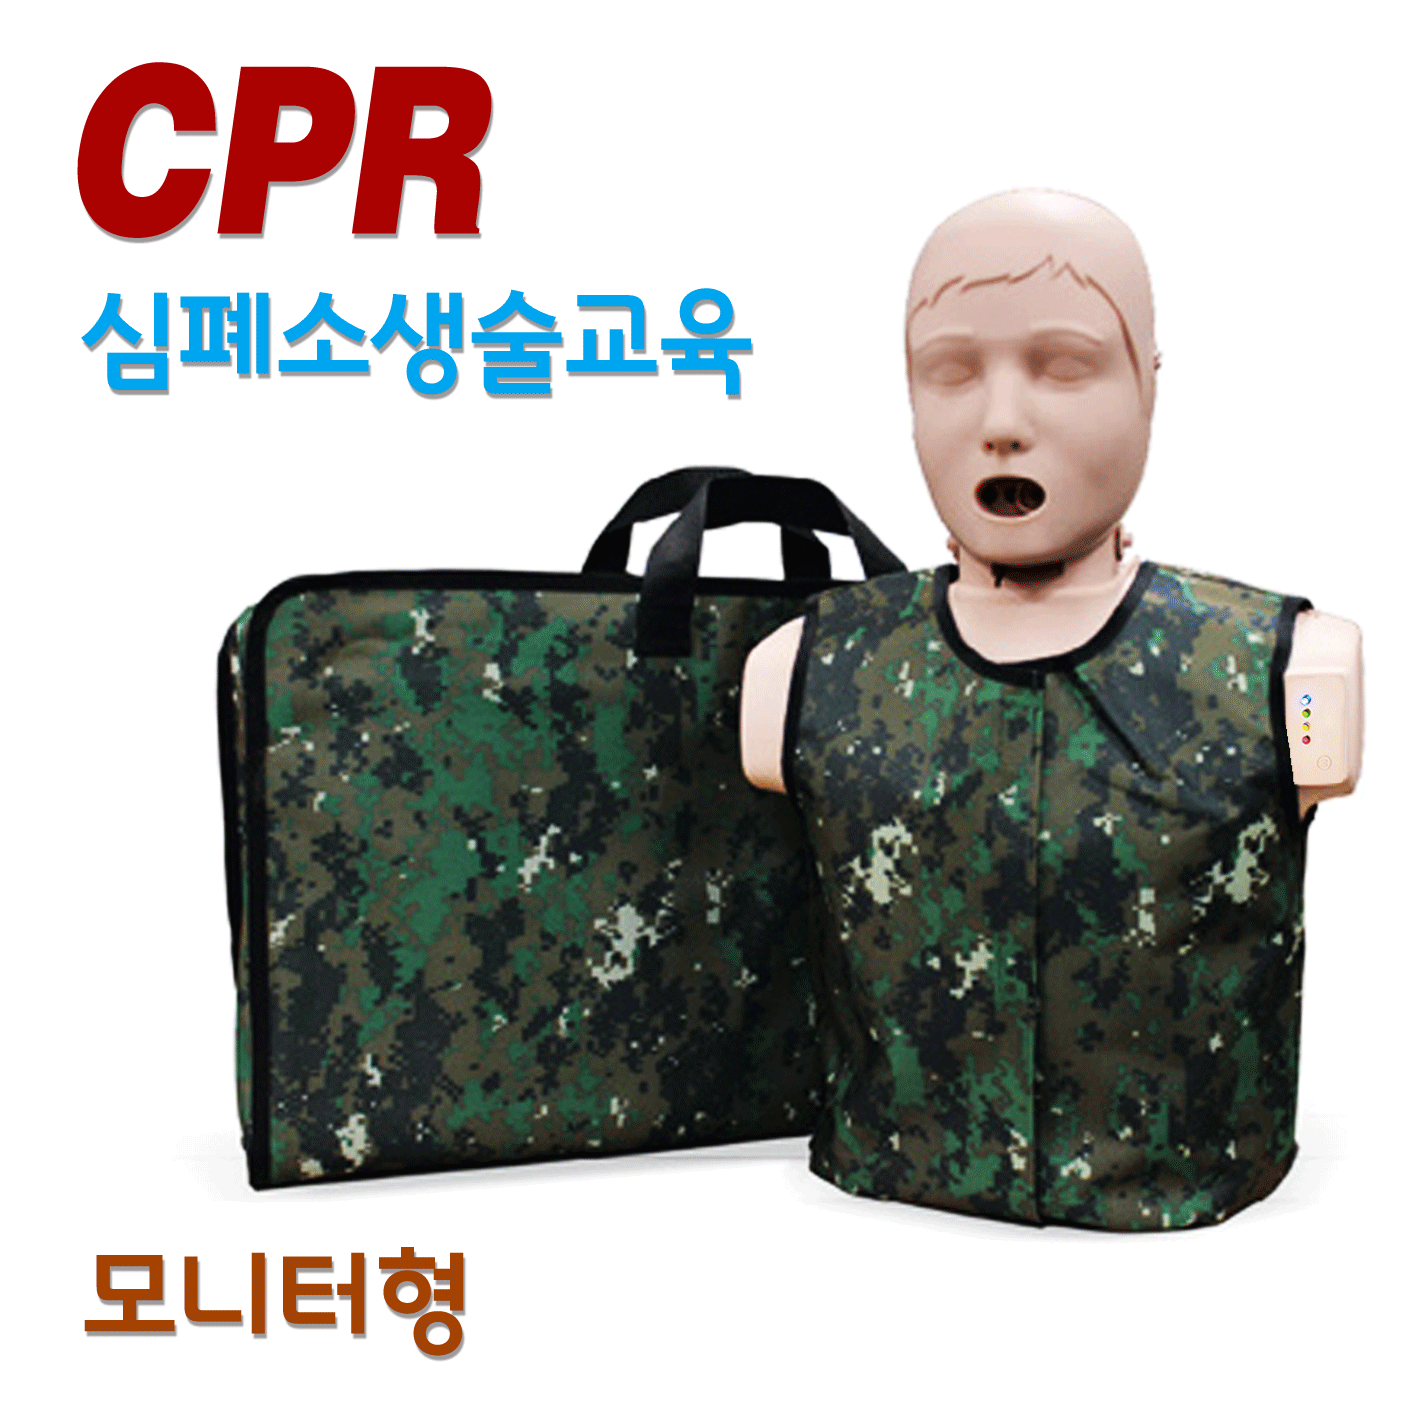 써니 - 모니터형 (현역 군인 및 예비군 전용 마네킹) [한국형 심폐소생술 모형]